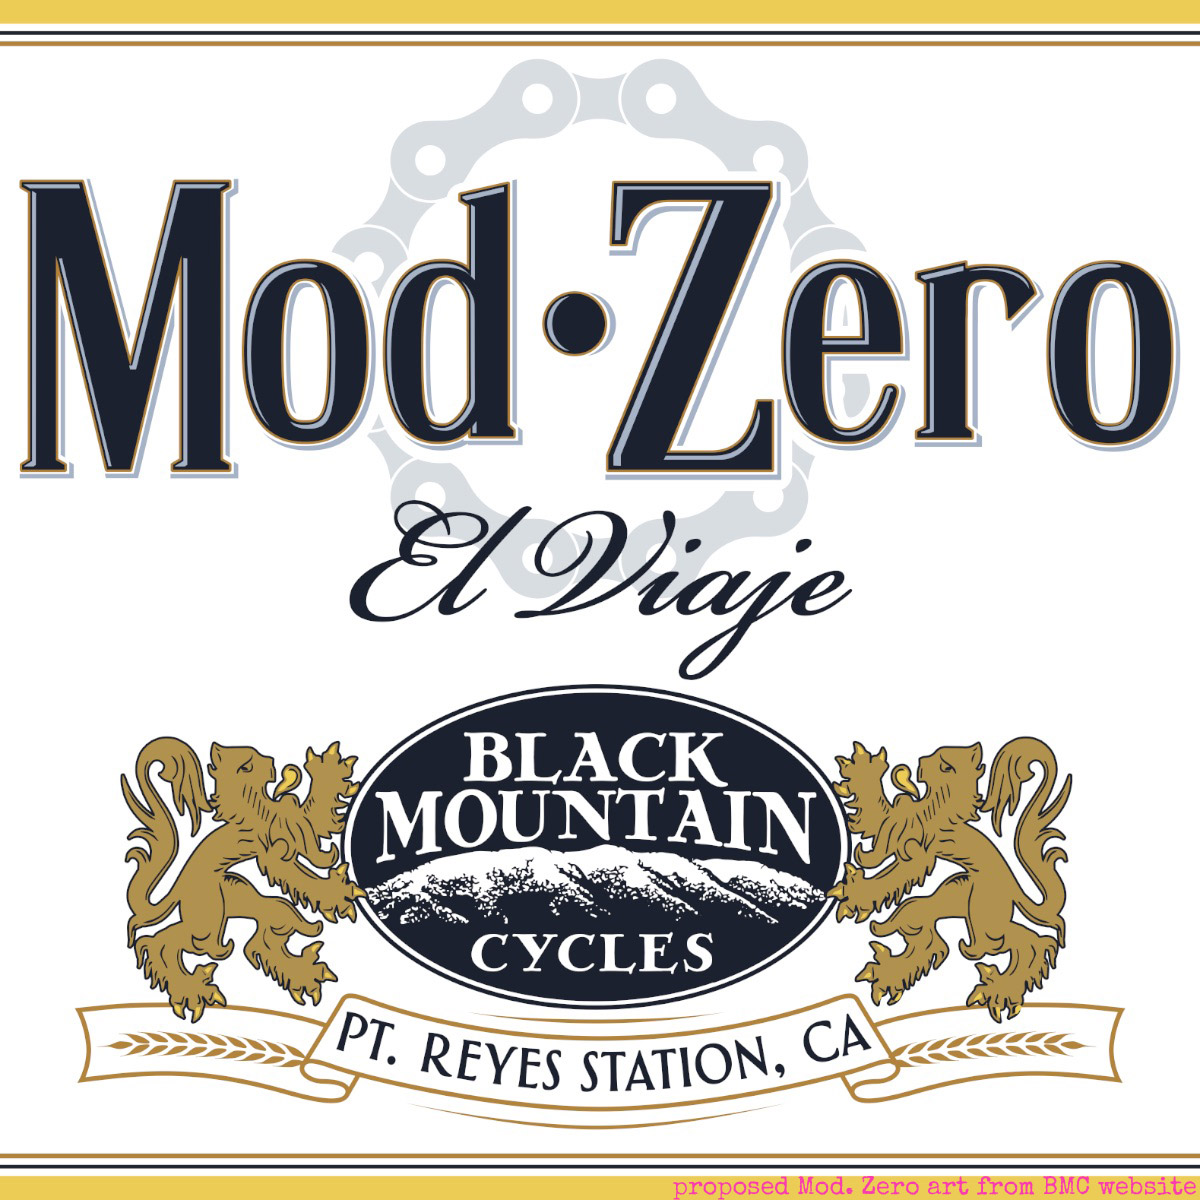 Black Mountain Cycles Mod. Zero art